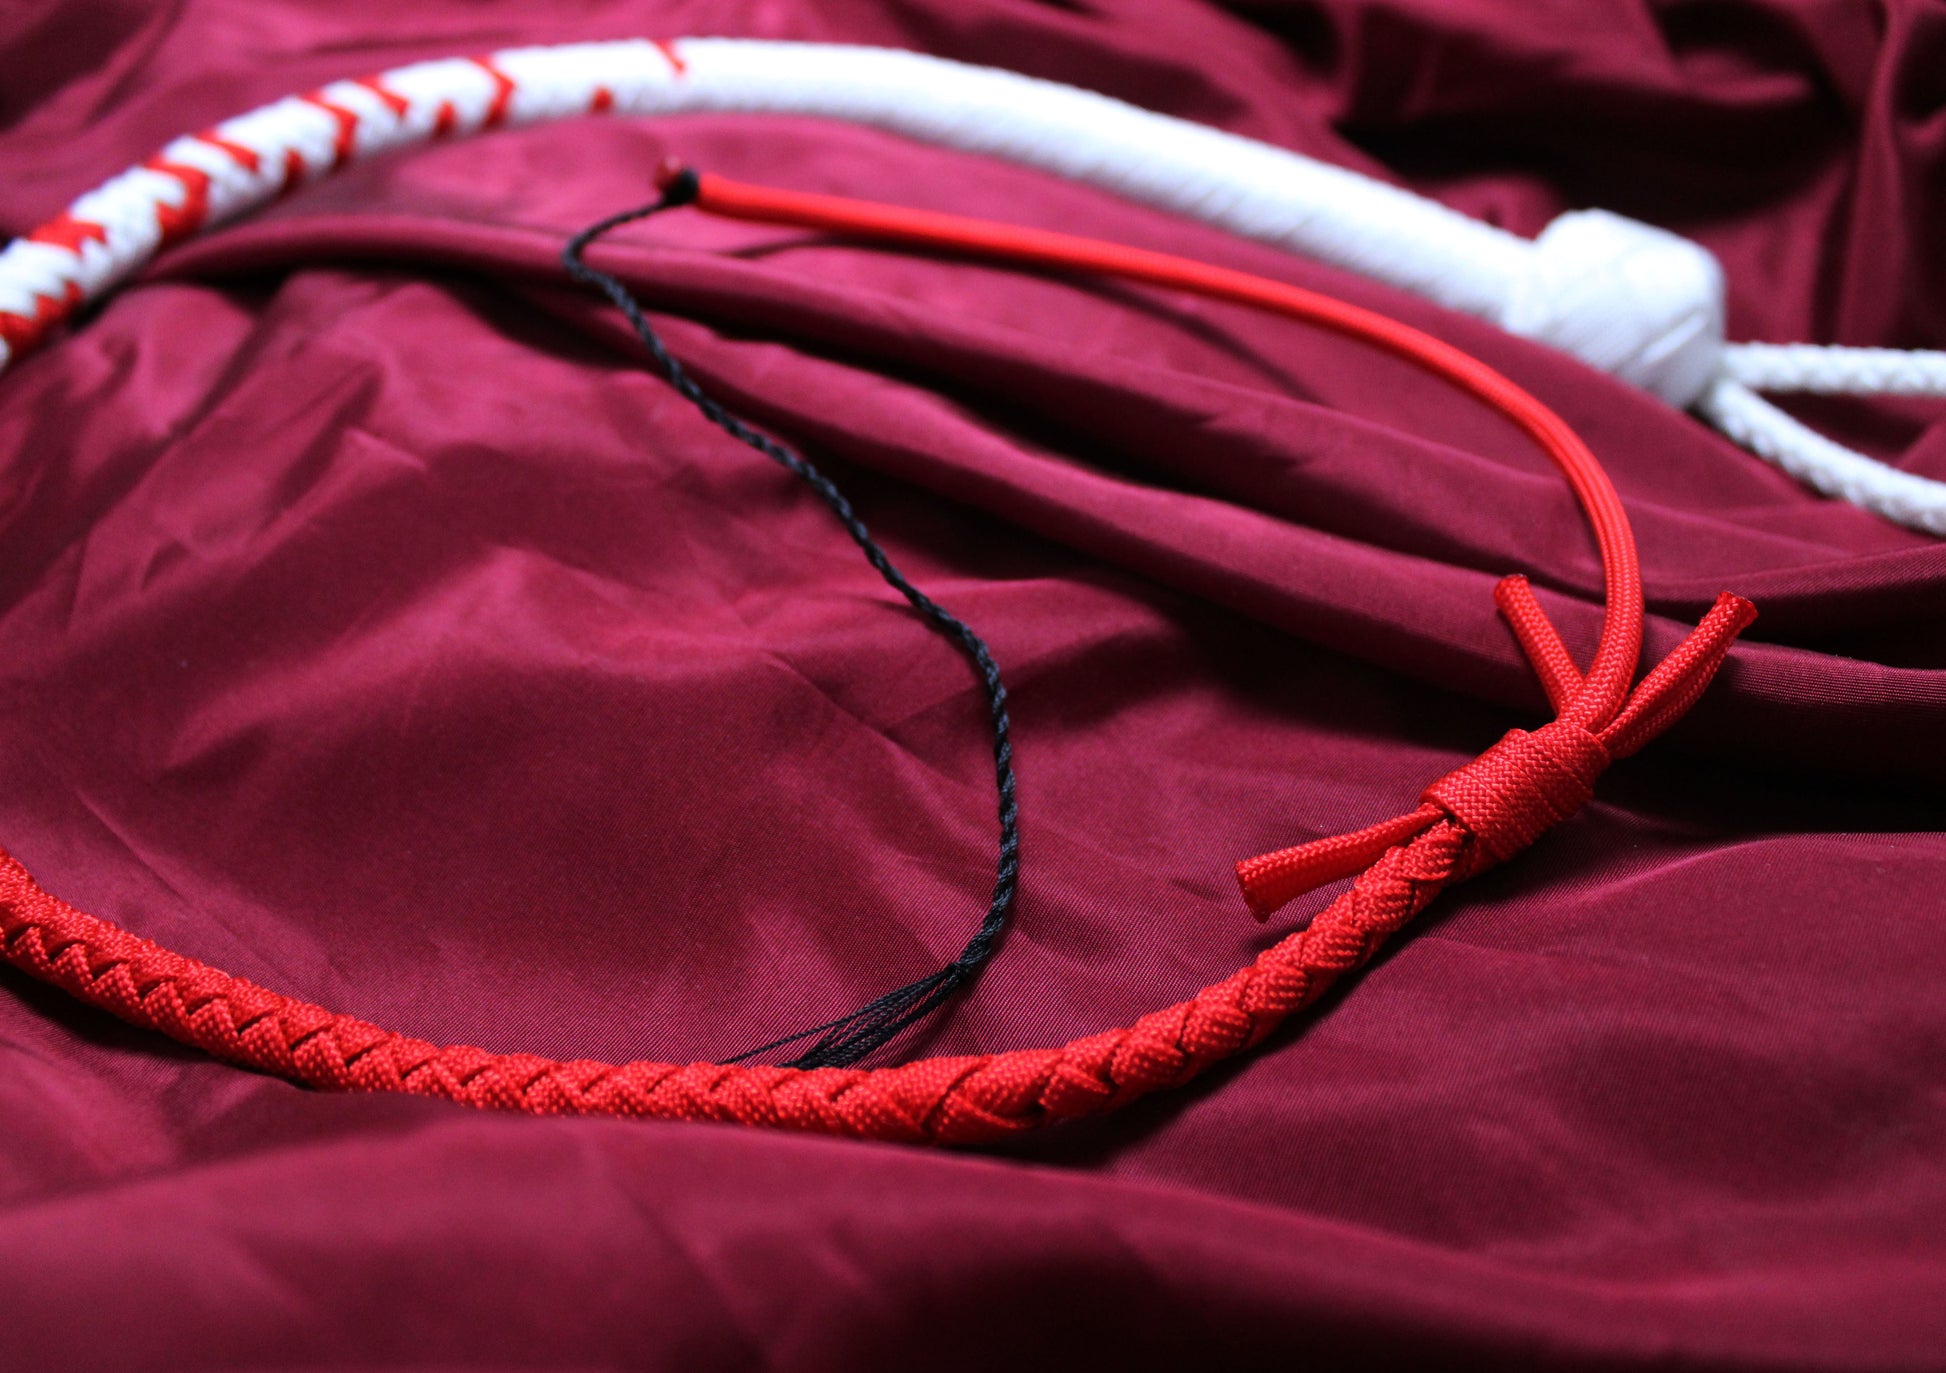 fouet blanc et rouge avec détail du tressage de la partie rouge